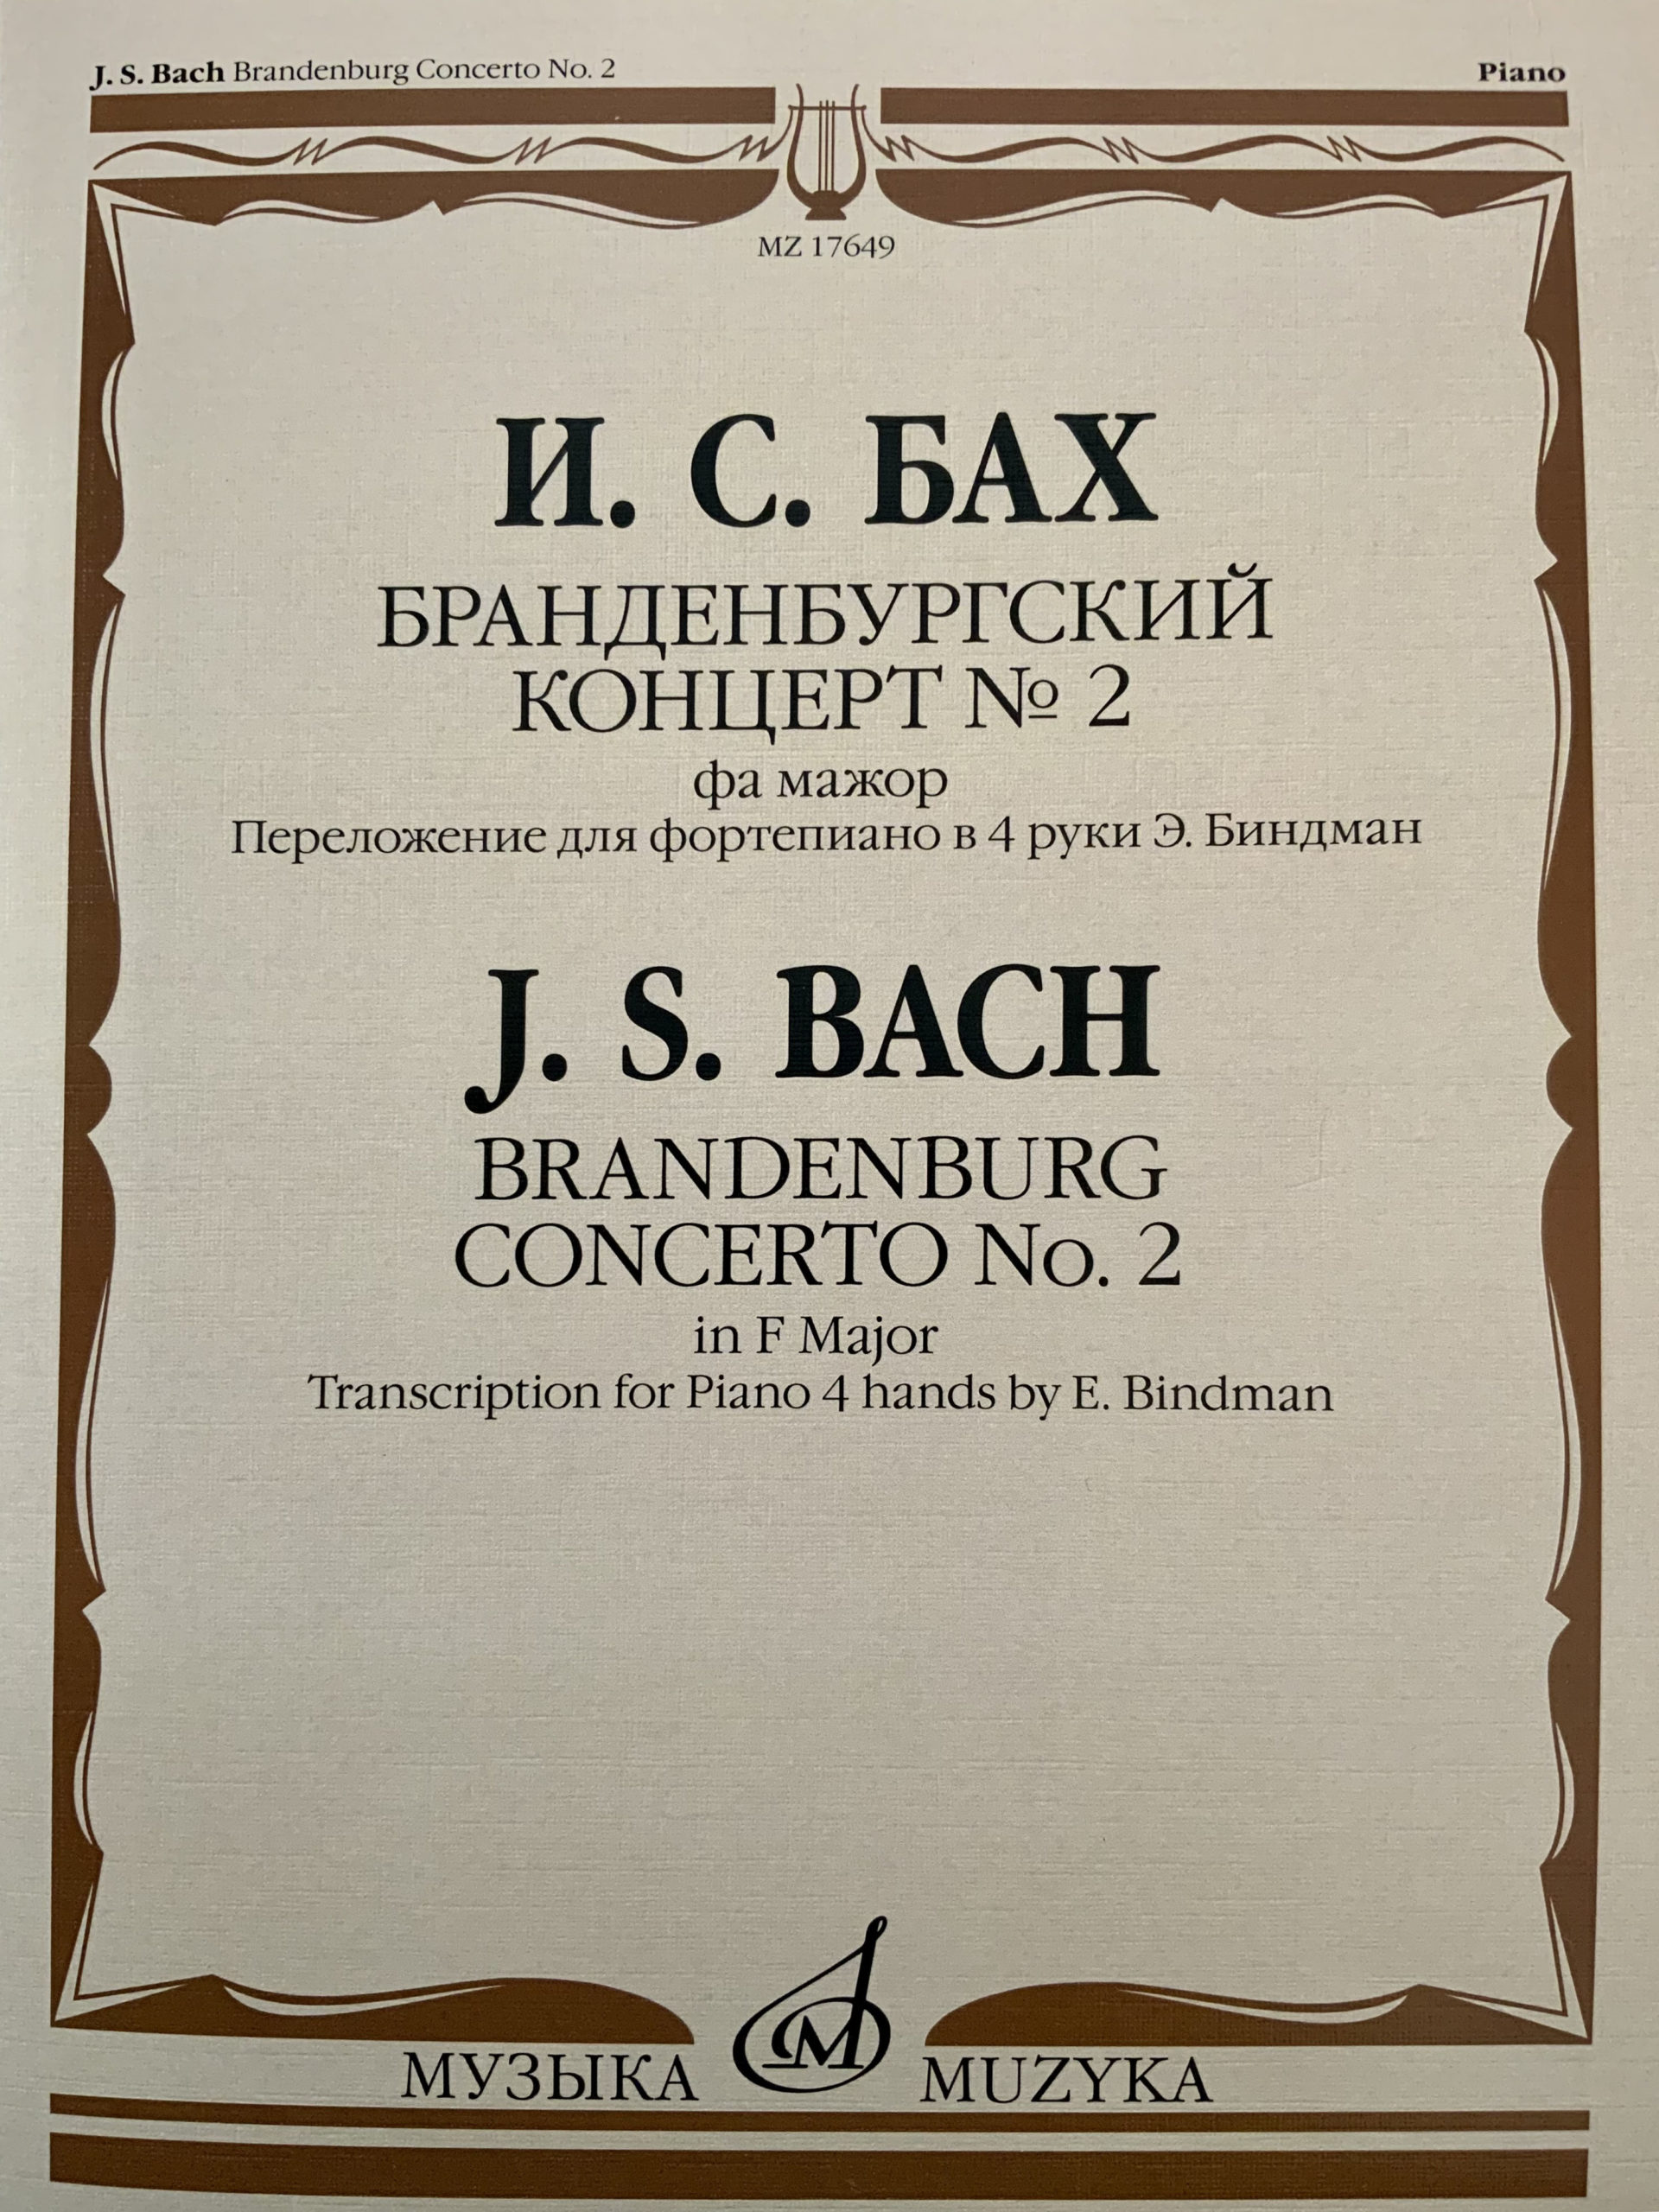 Muzyka Edition - Brandenburg Piano Concerto No. 2